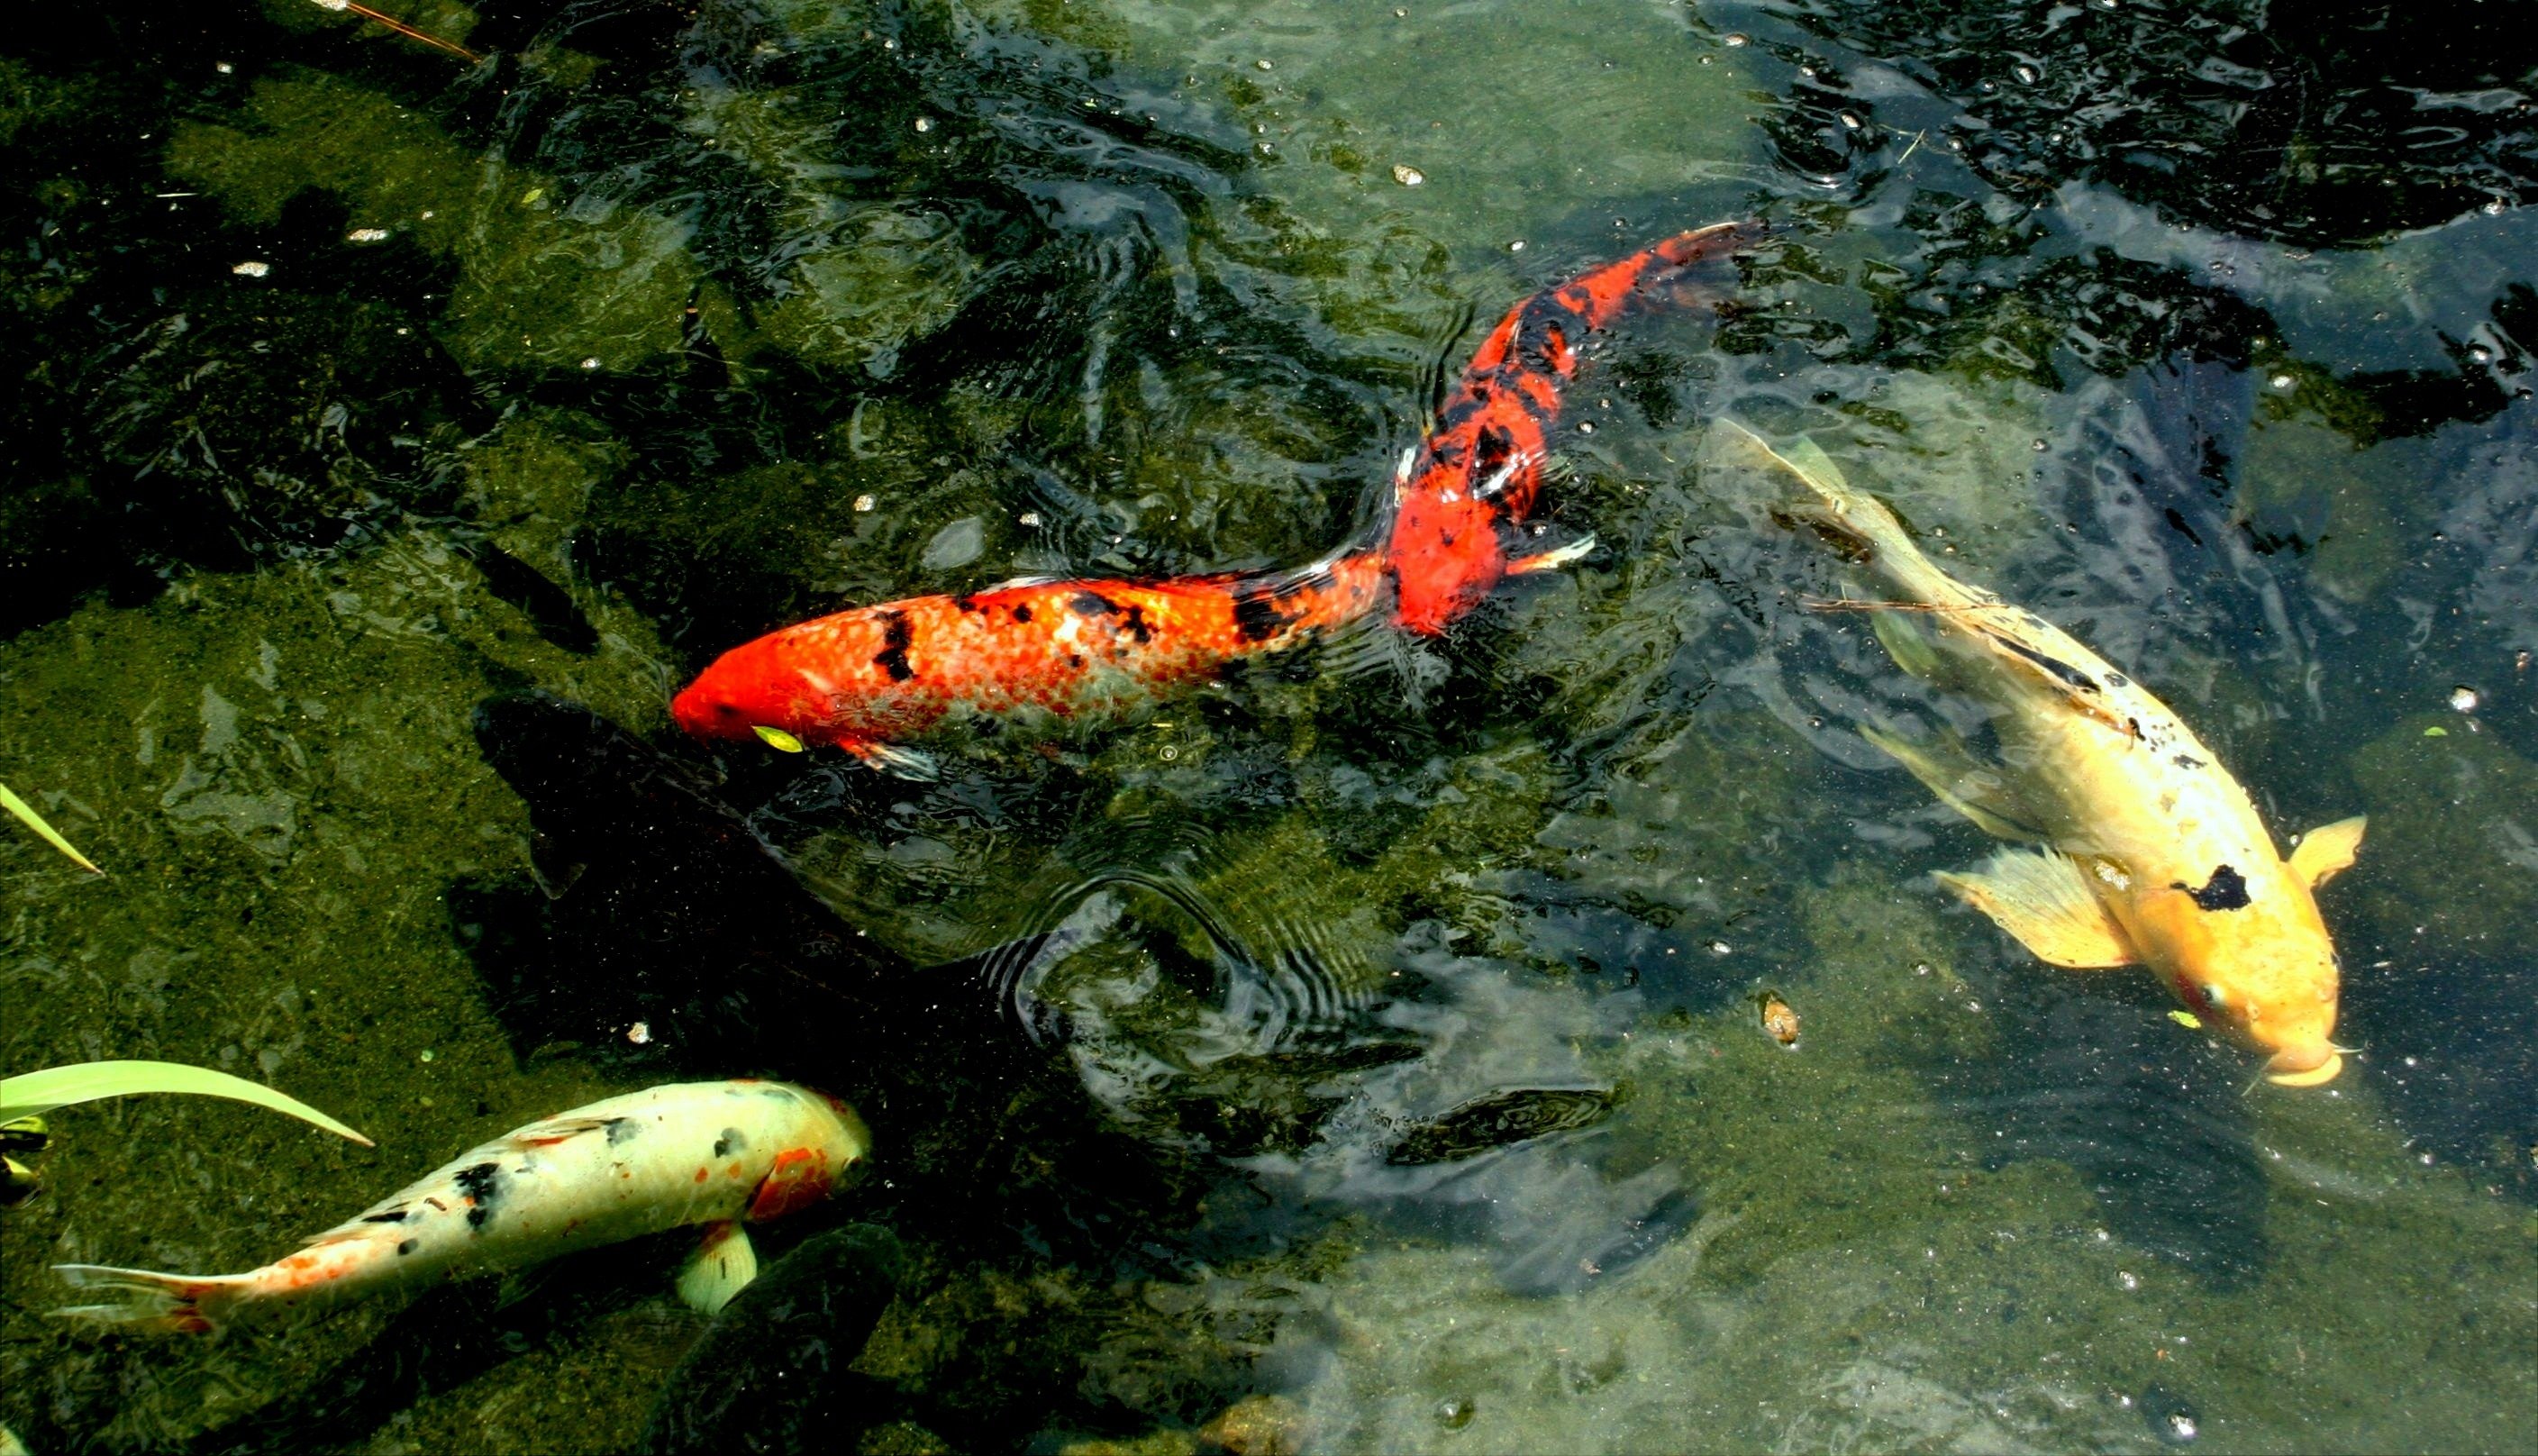 В водоемах живут рыбы